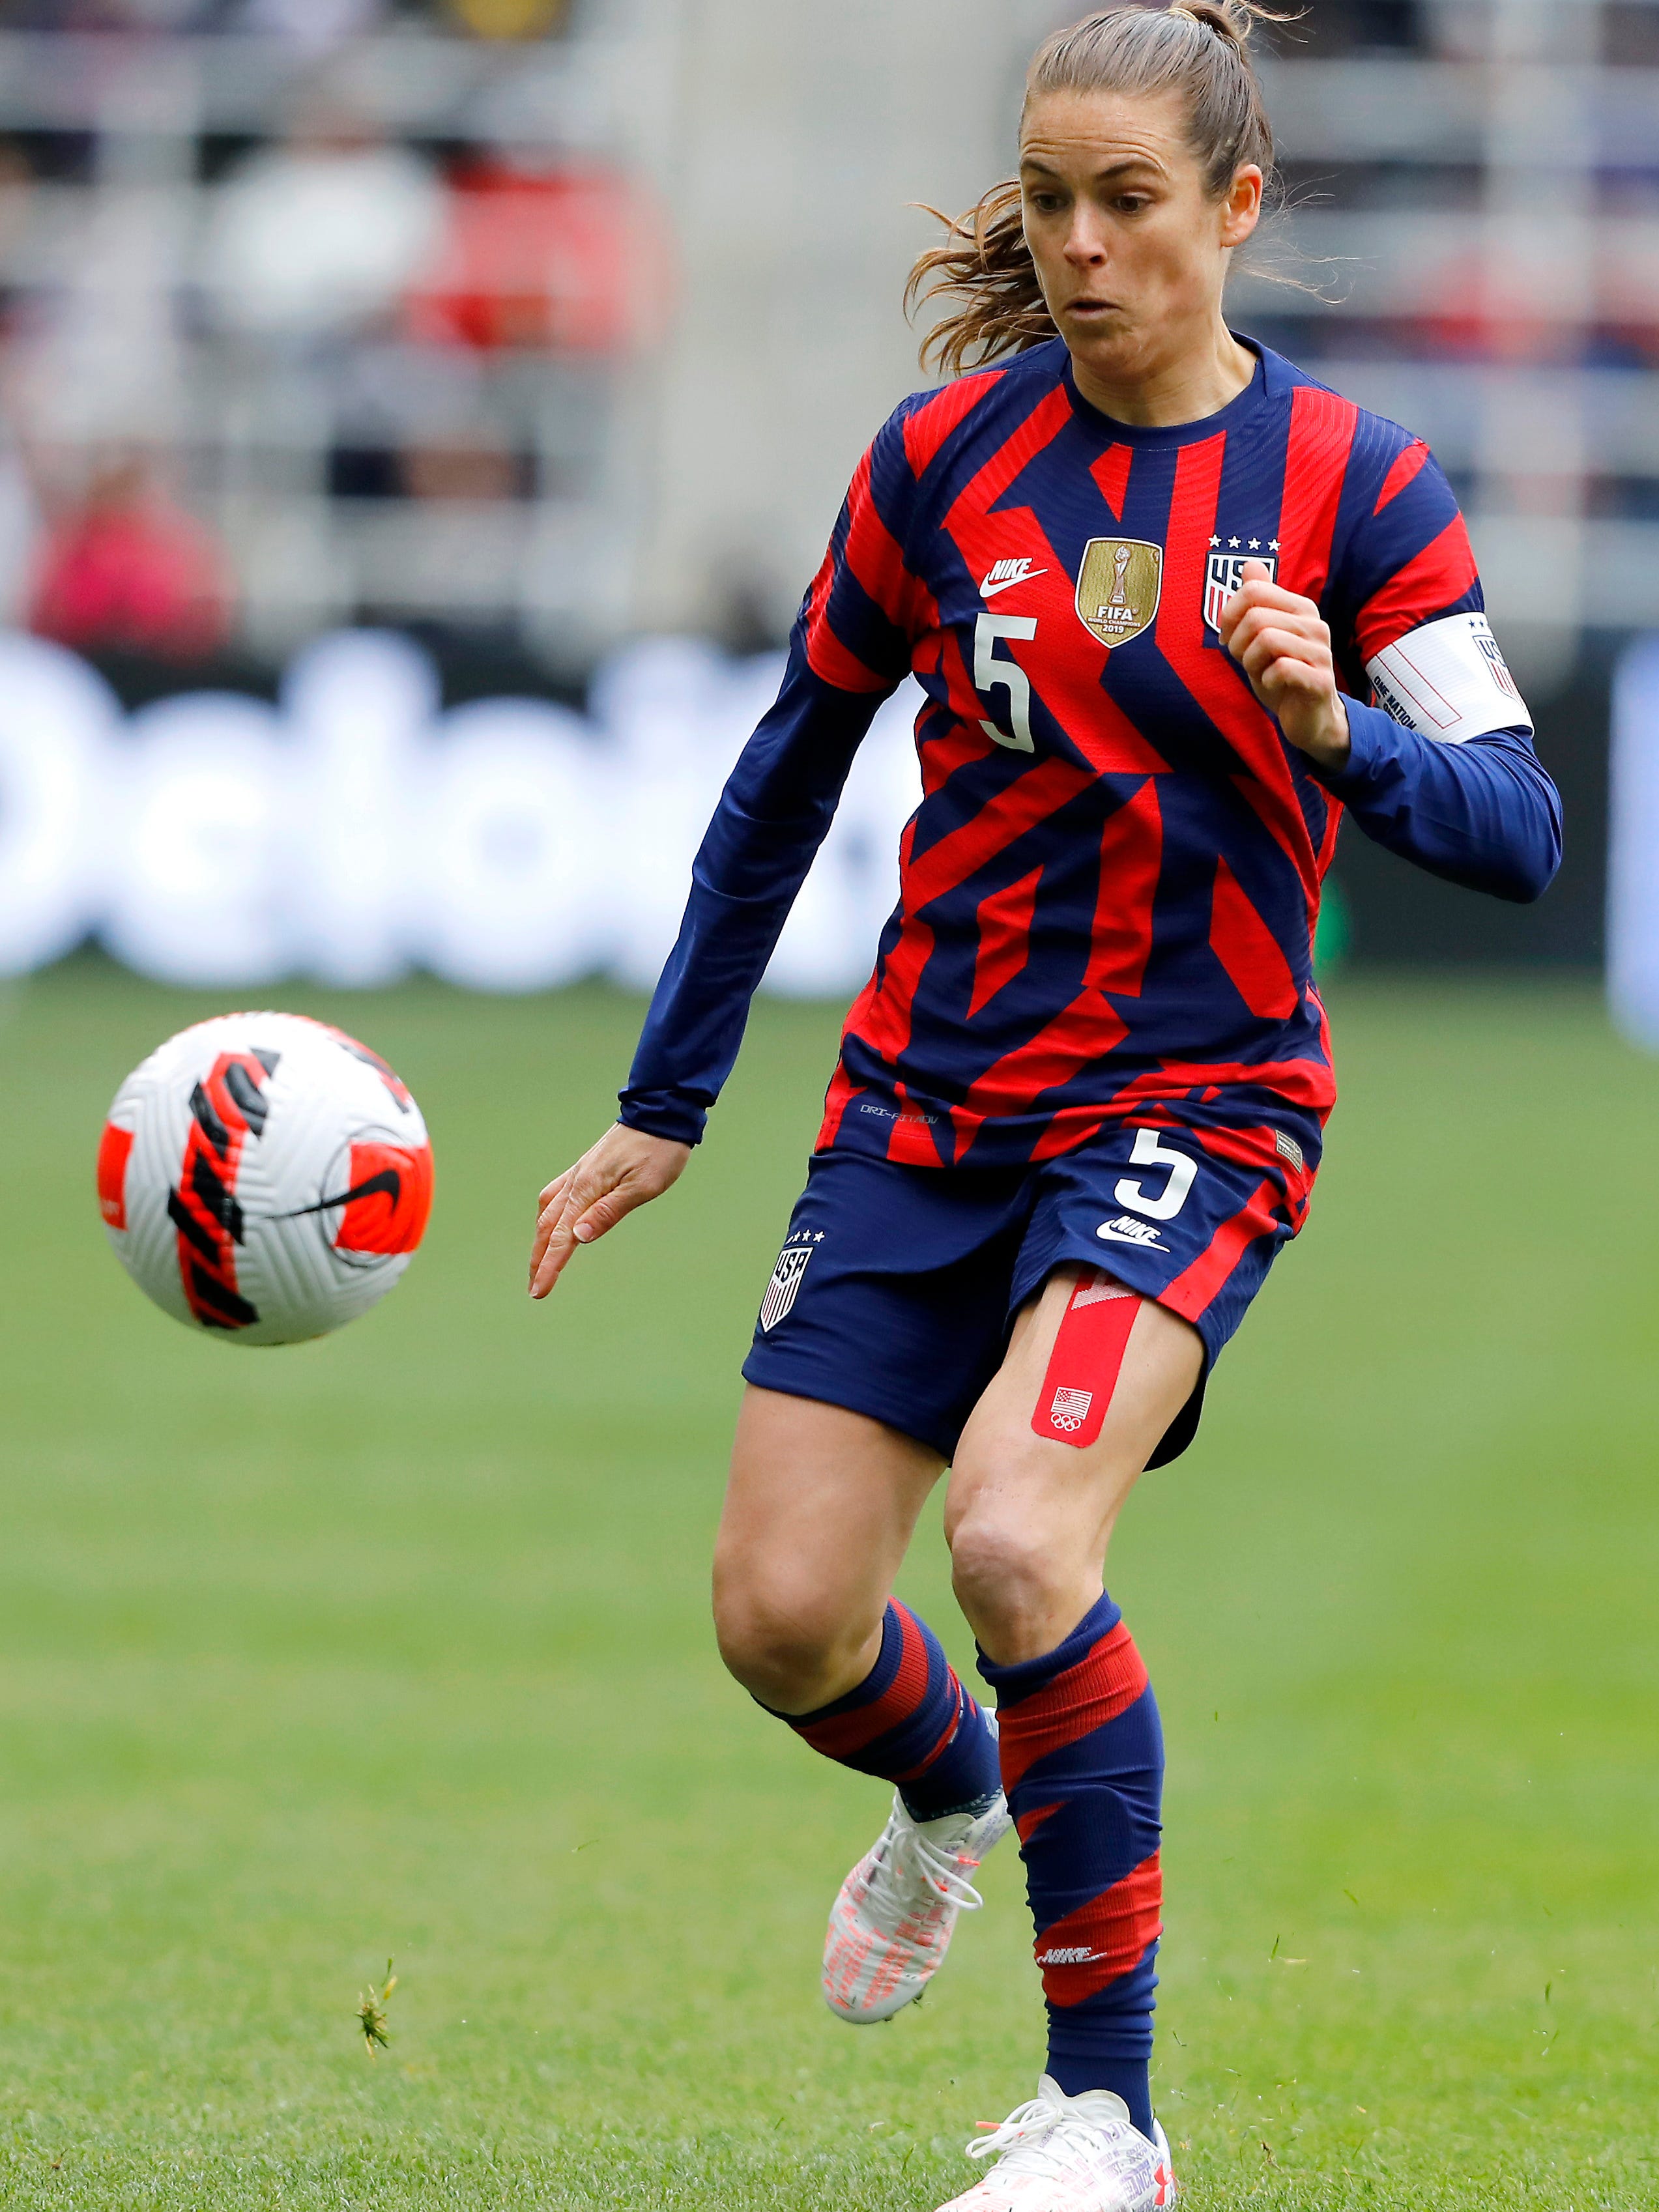 An action image of Kelley O'Hara playing soccer.